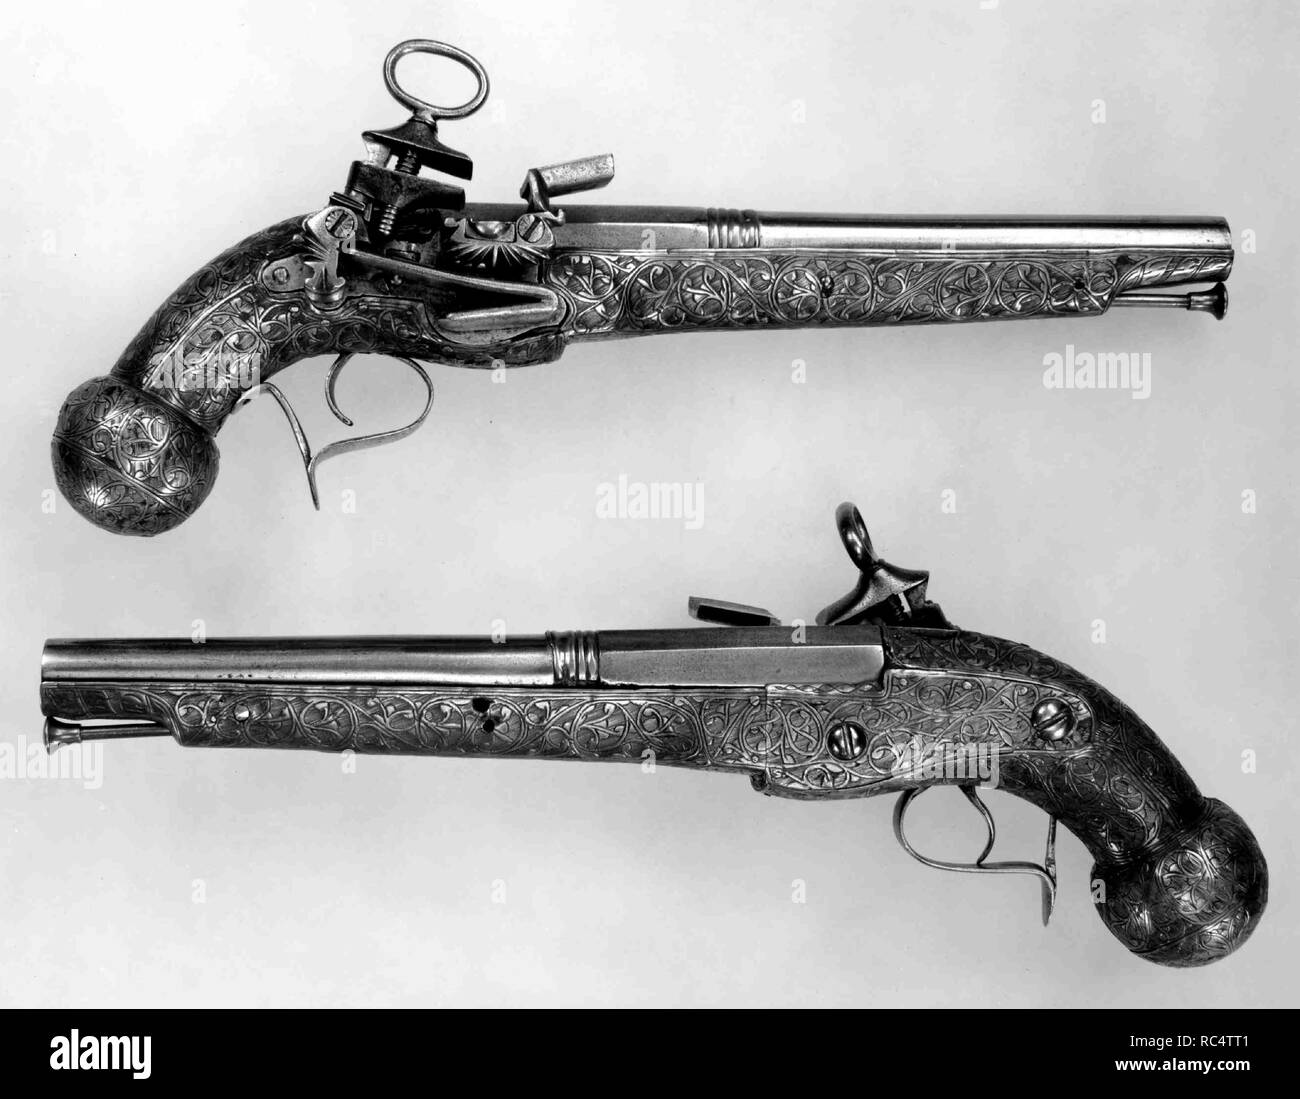 Paire de pistolets à silex Miquelet. Culture : l'espagnol, la Catalogne. Dimensions : L. de chaque 12 5/8 in. (32,1 cm) ; L. de chaque canon 8 7/8 in. (22,5 cm) ; de chaque Cal. .55 in. (14,0 mm) ; Wt. de chaque 1 lb. 11 oz. (765 g). Date : du 1687. Ce pistolet de style catalan de manière unique est associée à la ville de Ripoll, où il y avait un gunmaking l'industrie florissante du xviie siècle jusqu'aux années 1830. Musée : Metropolitan Museum of Art, New York, USA. Banque D'Images